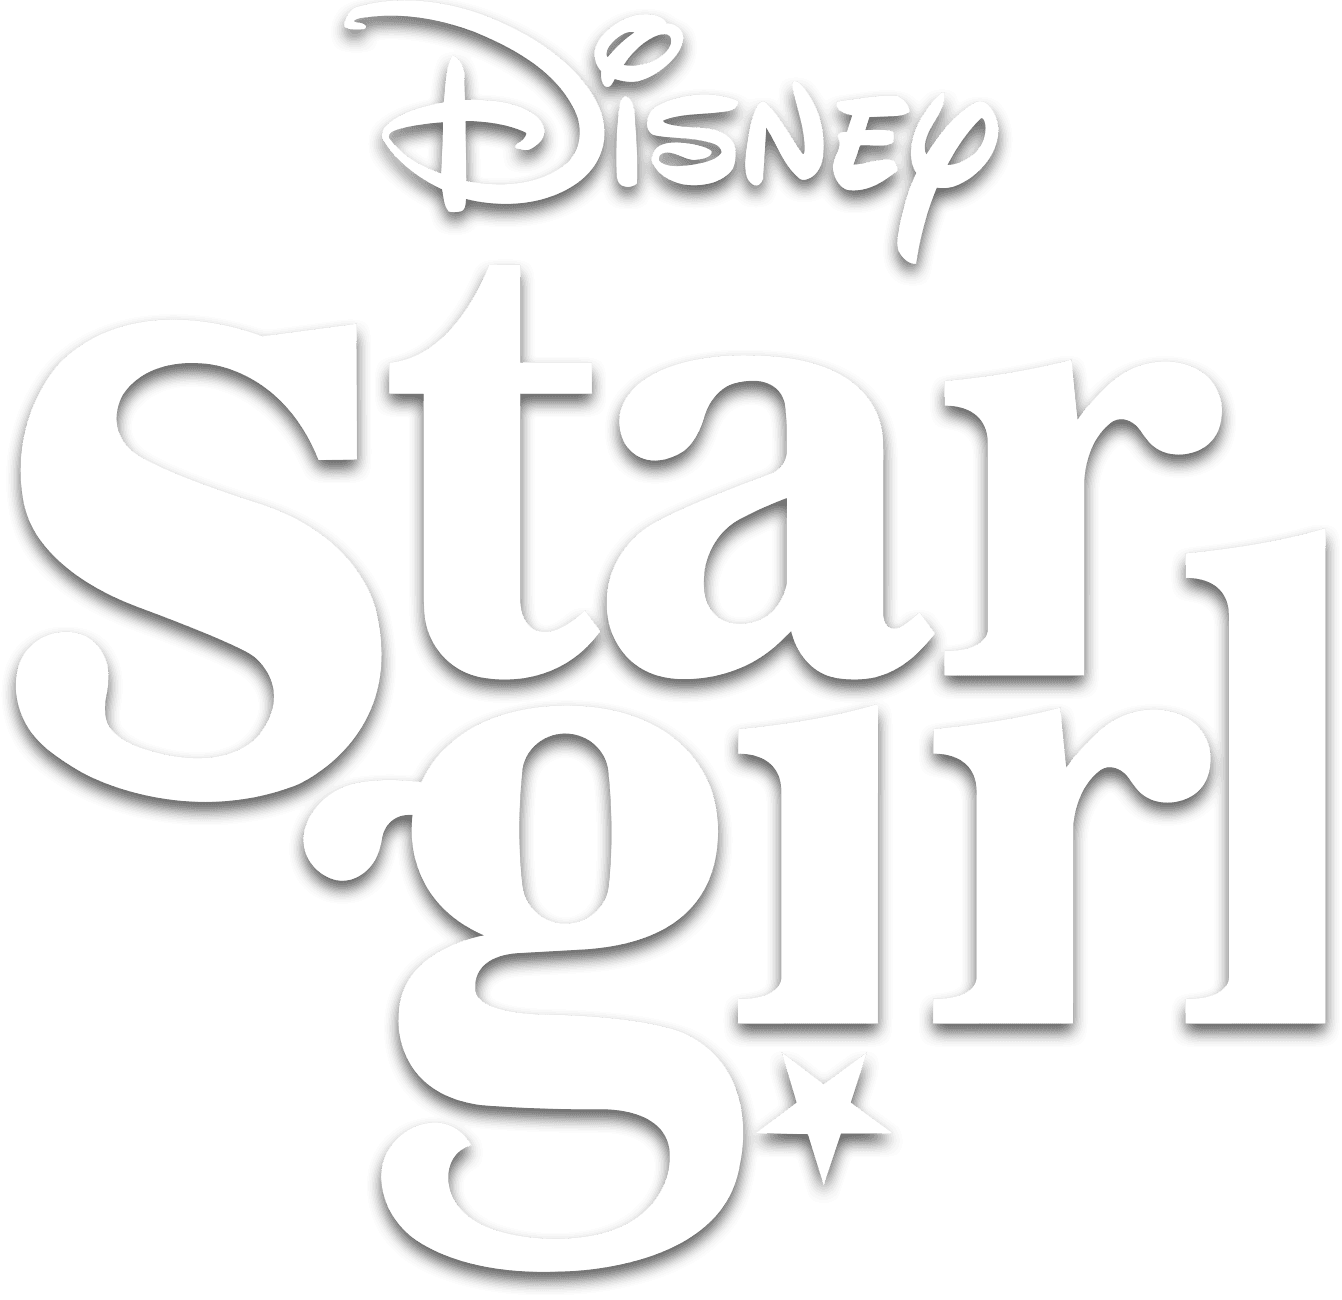 Stargirl logo